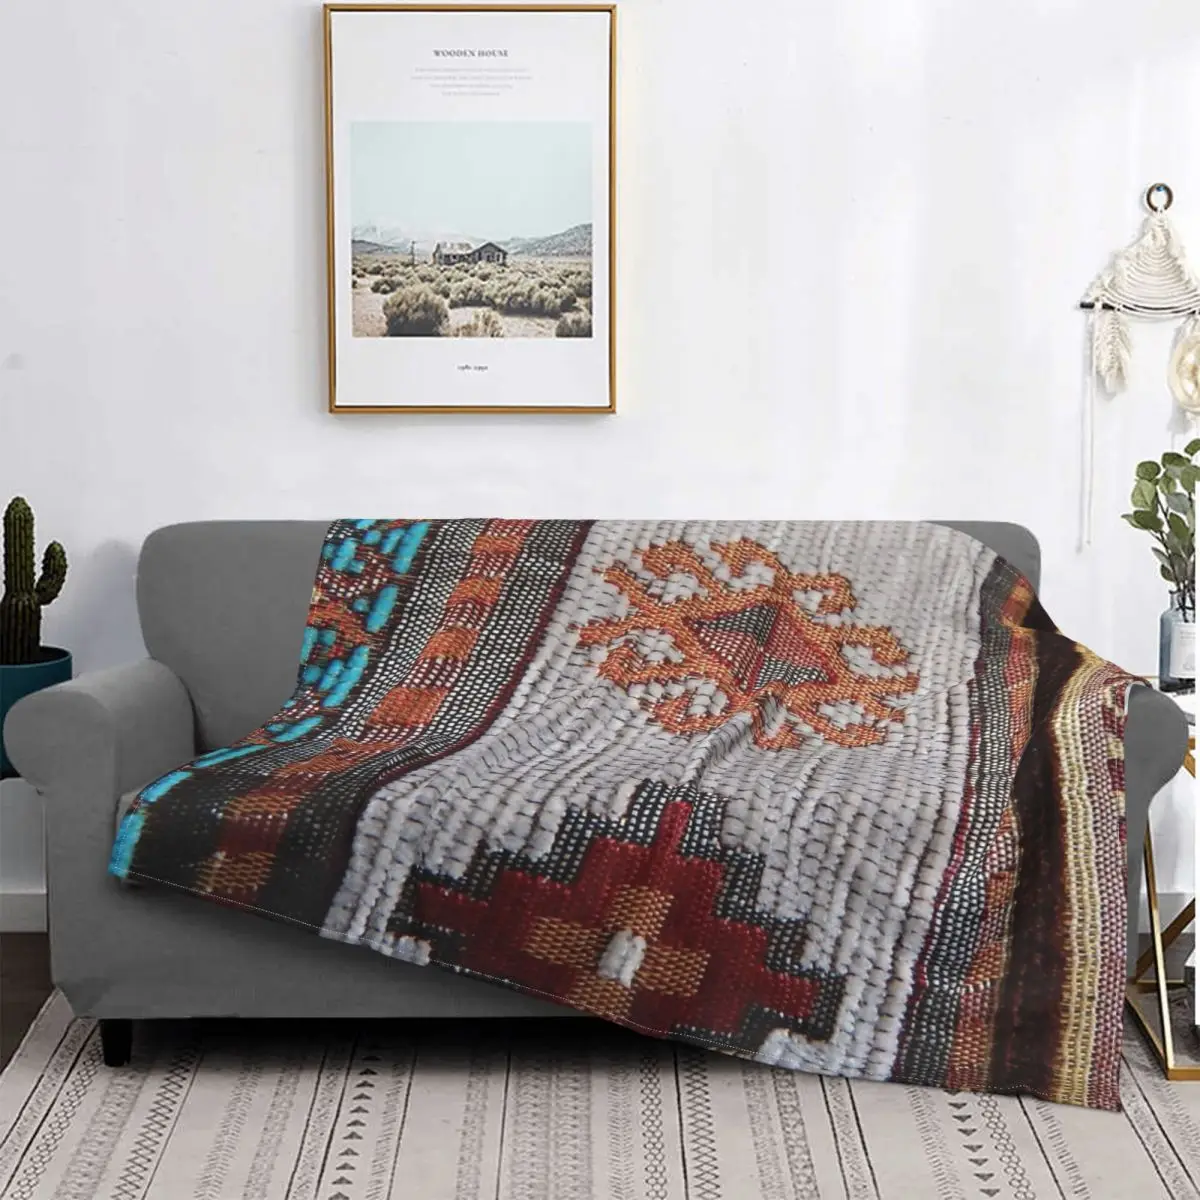 

Diseño en patrón oriental de Manta, colcha para cama, sofá a cuadros, manta de Picnic, toalla de playa de lujo